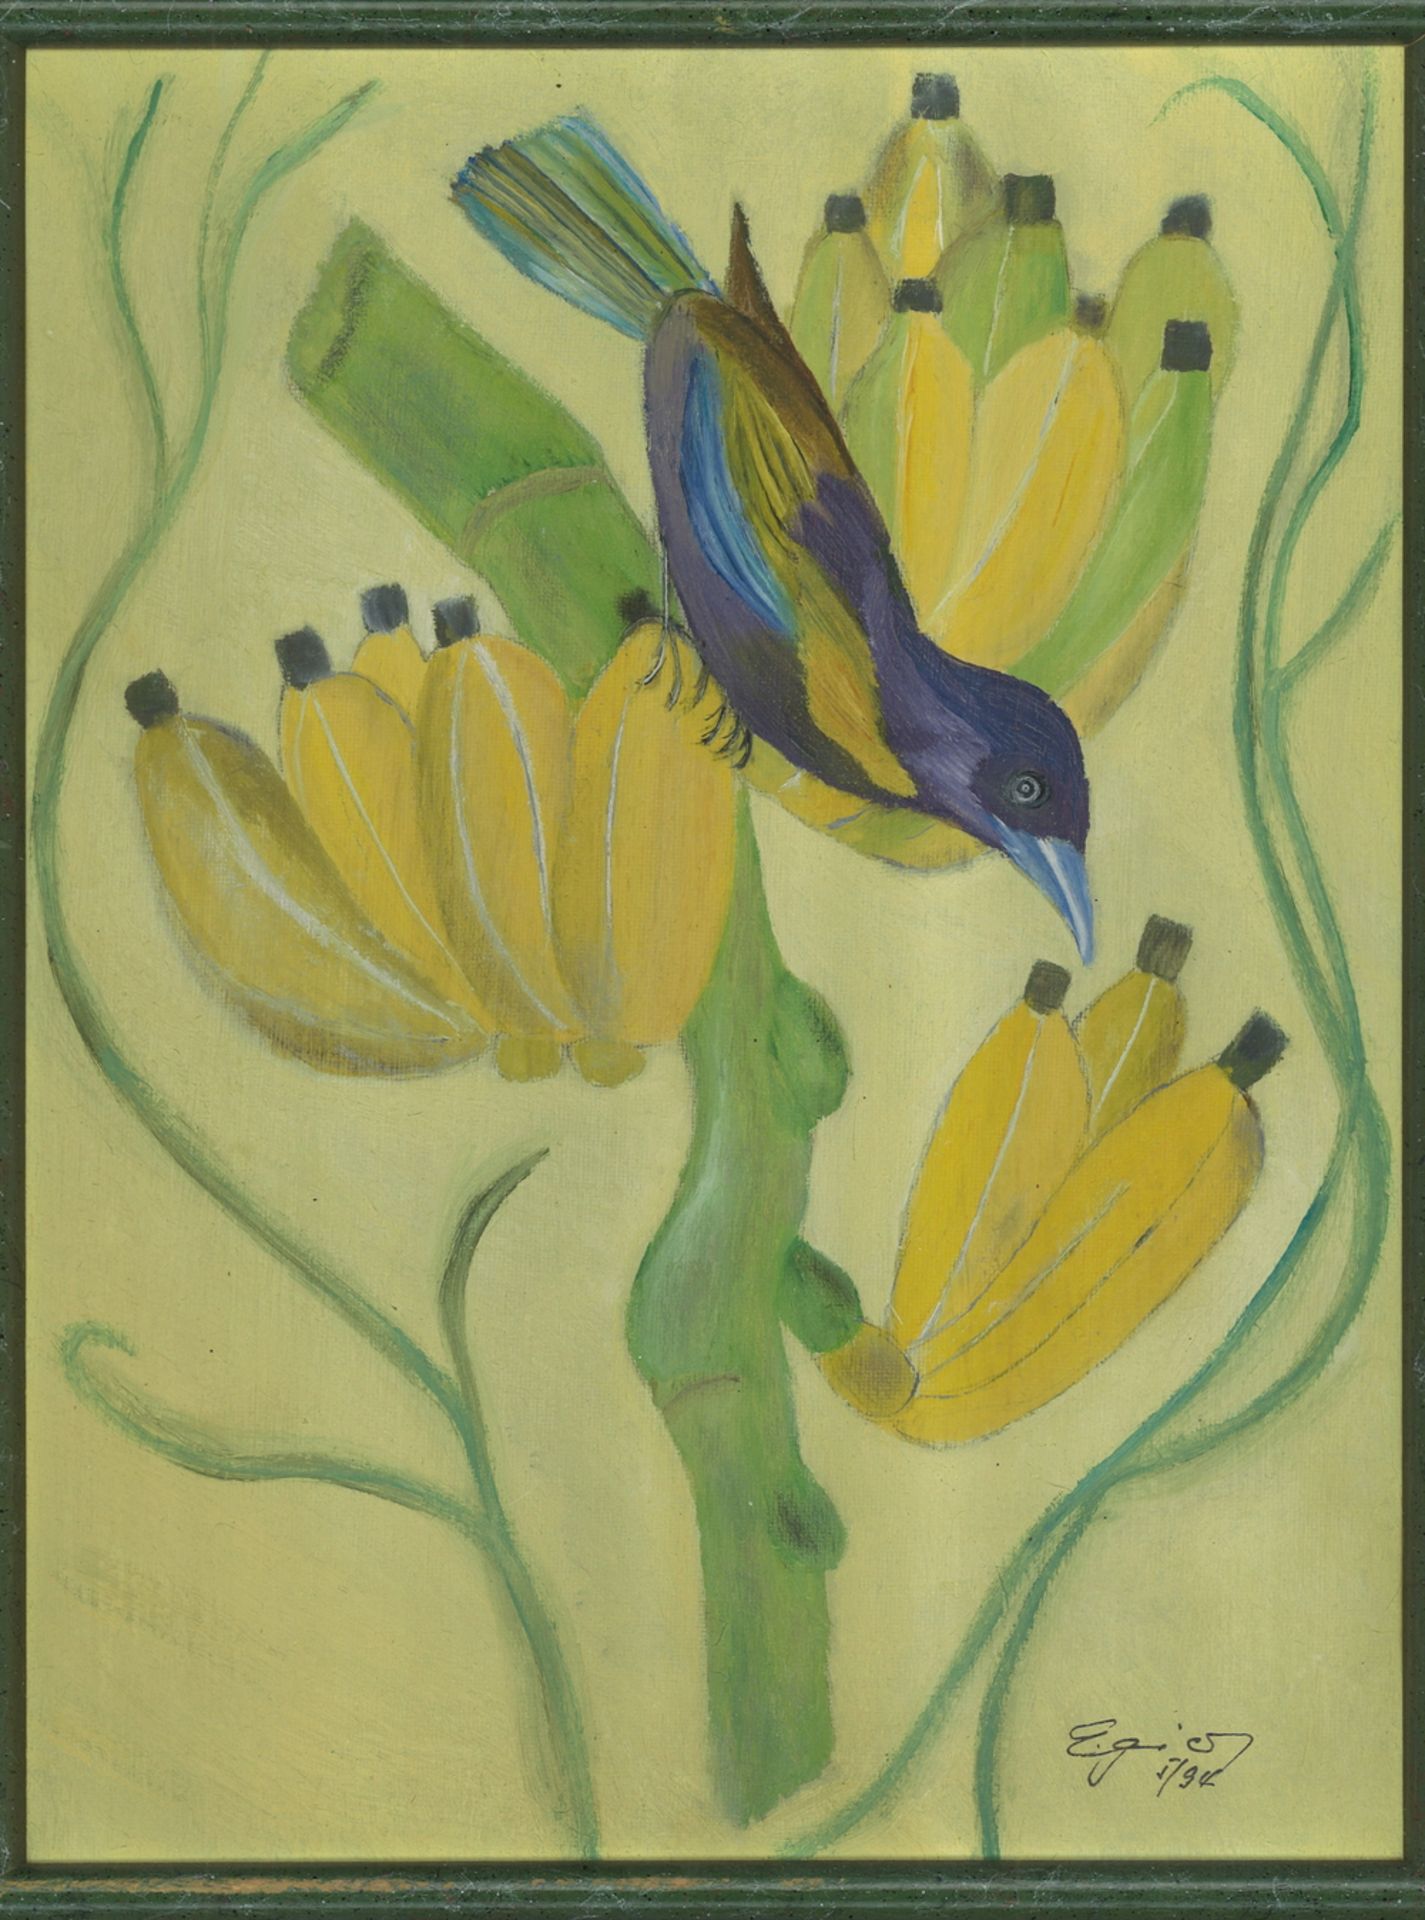 Gemälde auf Leinwand "Vogel in Bananenstaude" im alten Rahmen, rechts unten unleserliche Signatur